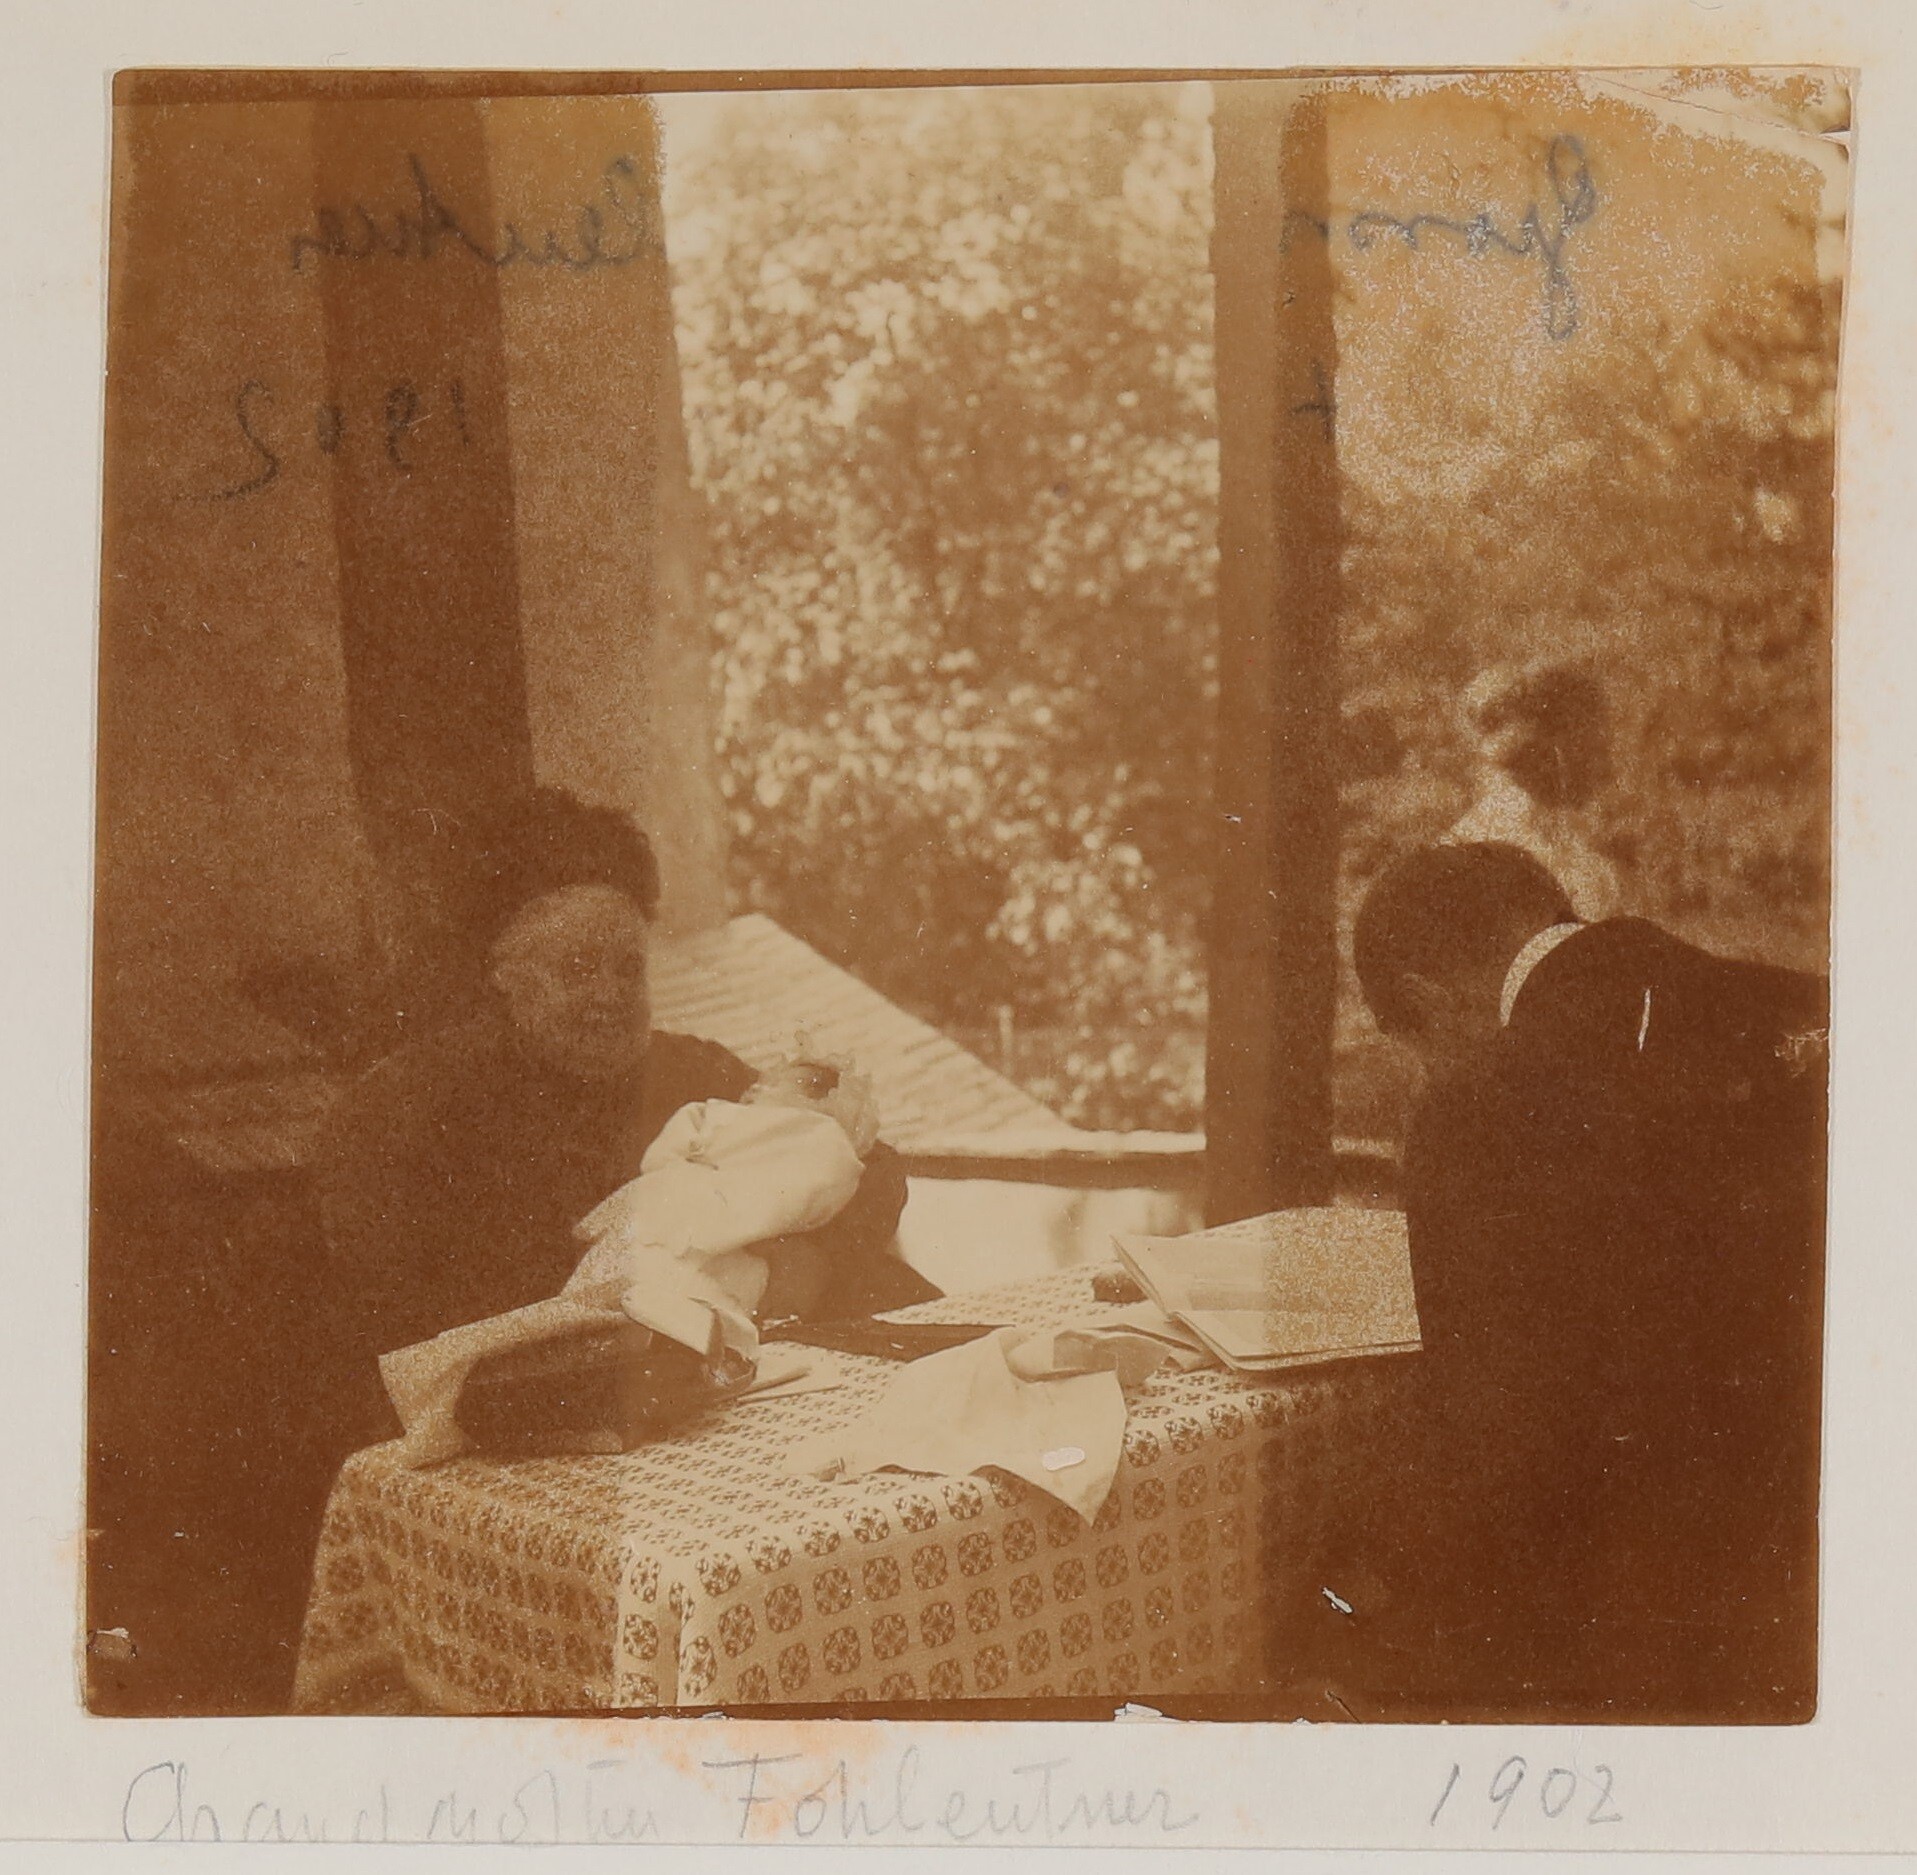 Josefine Fohleutner mit Christiane auf dem Arm, gegenüber HvH, dahinter Gerty, im Saletl(?), 1902 (Freies Deutsches Hochstift / Frankfurter Goethe-Museum CC BY-NC-SA)